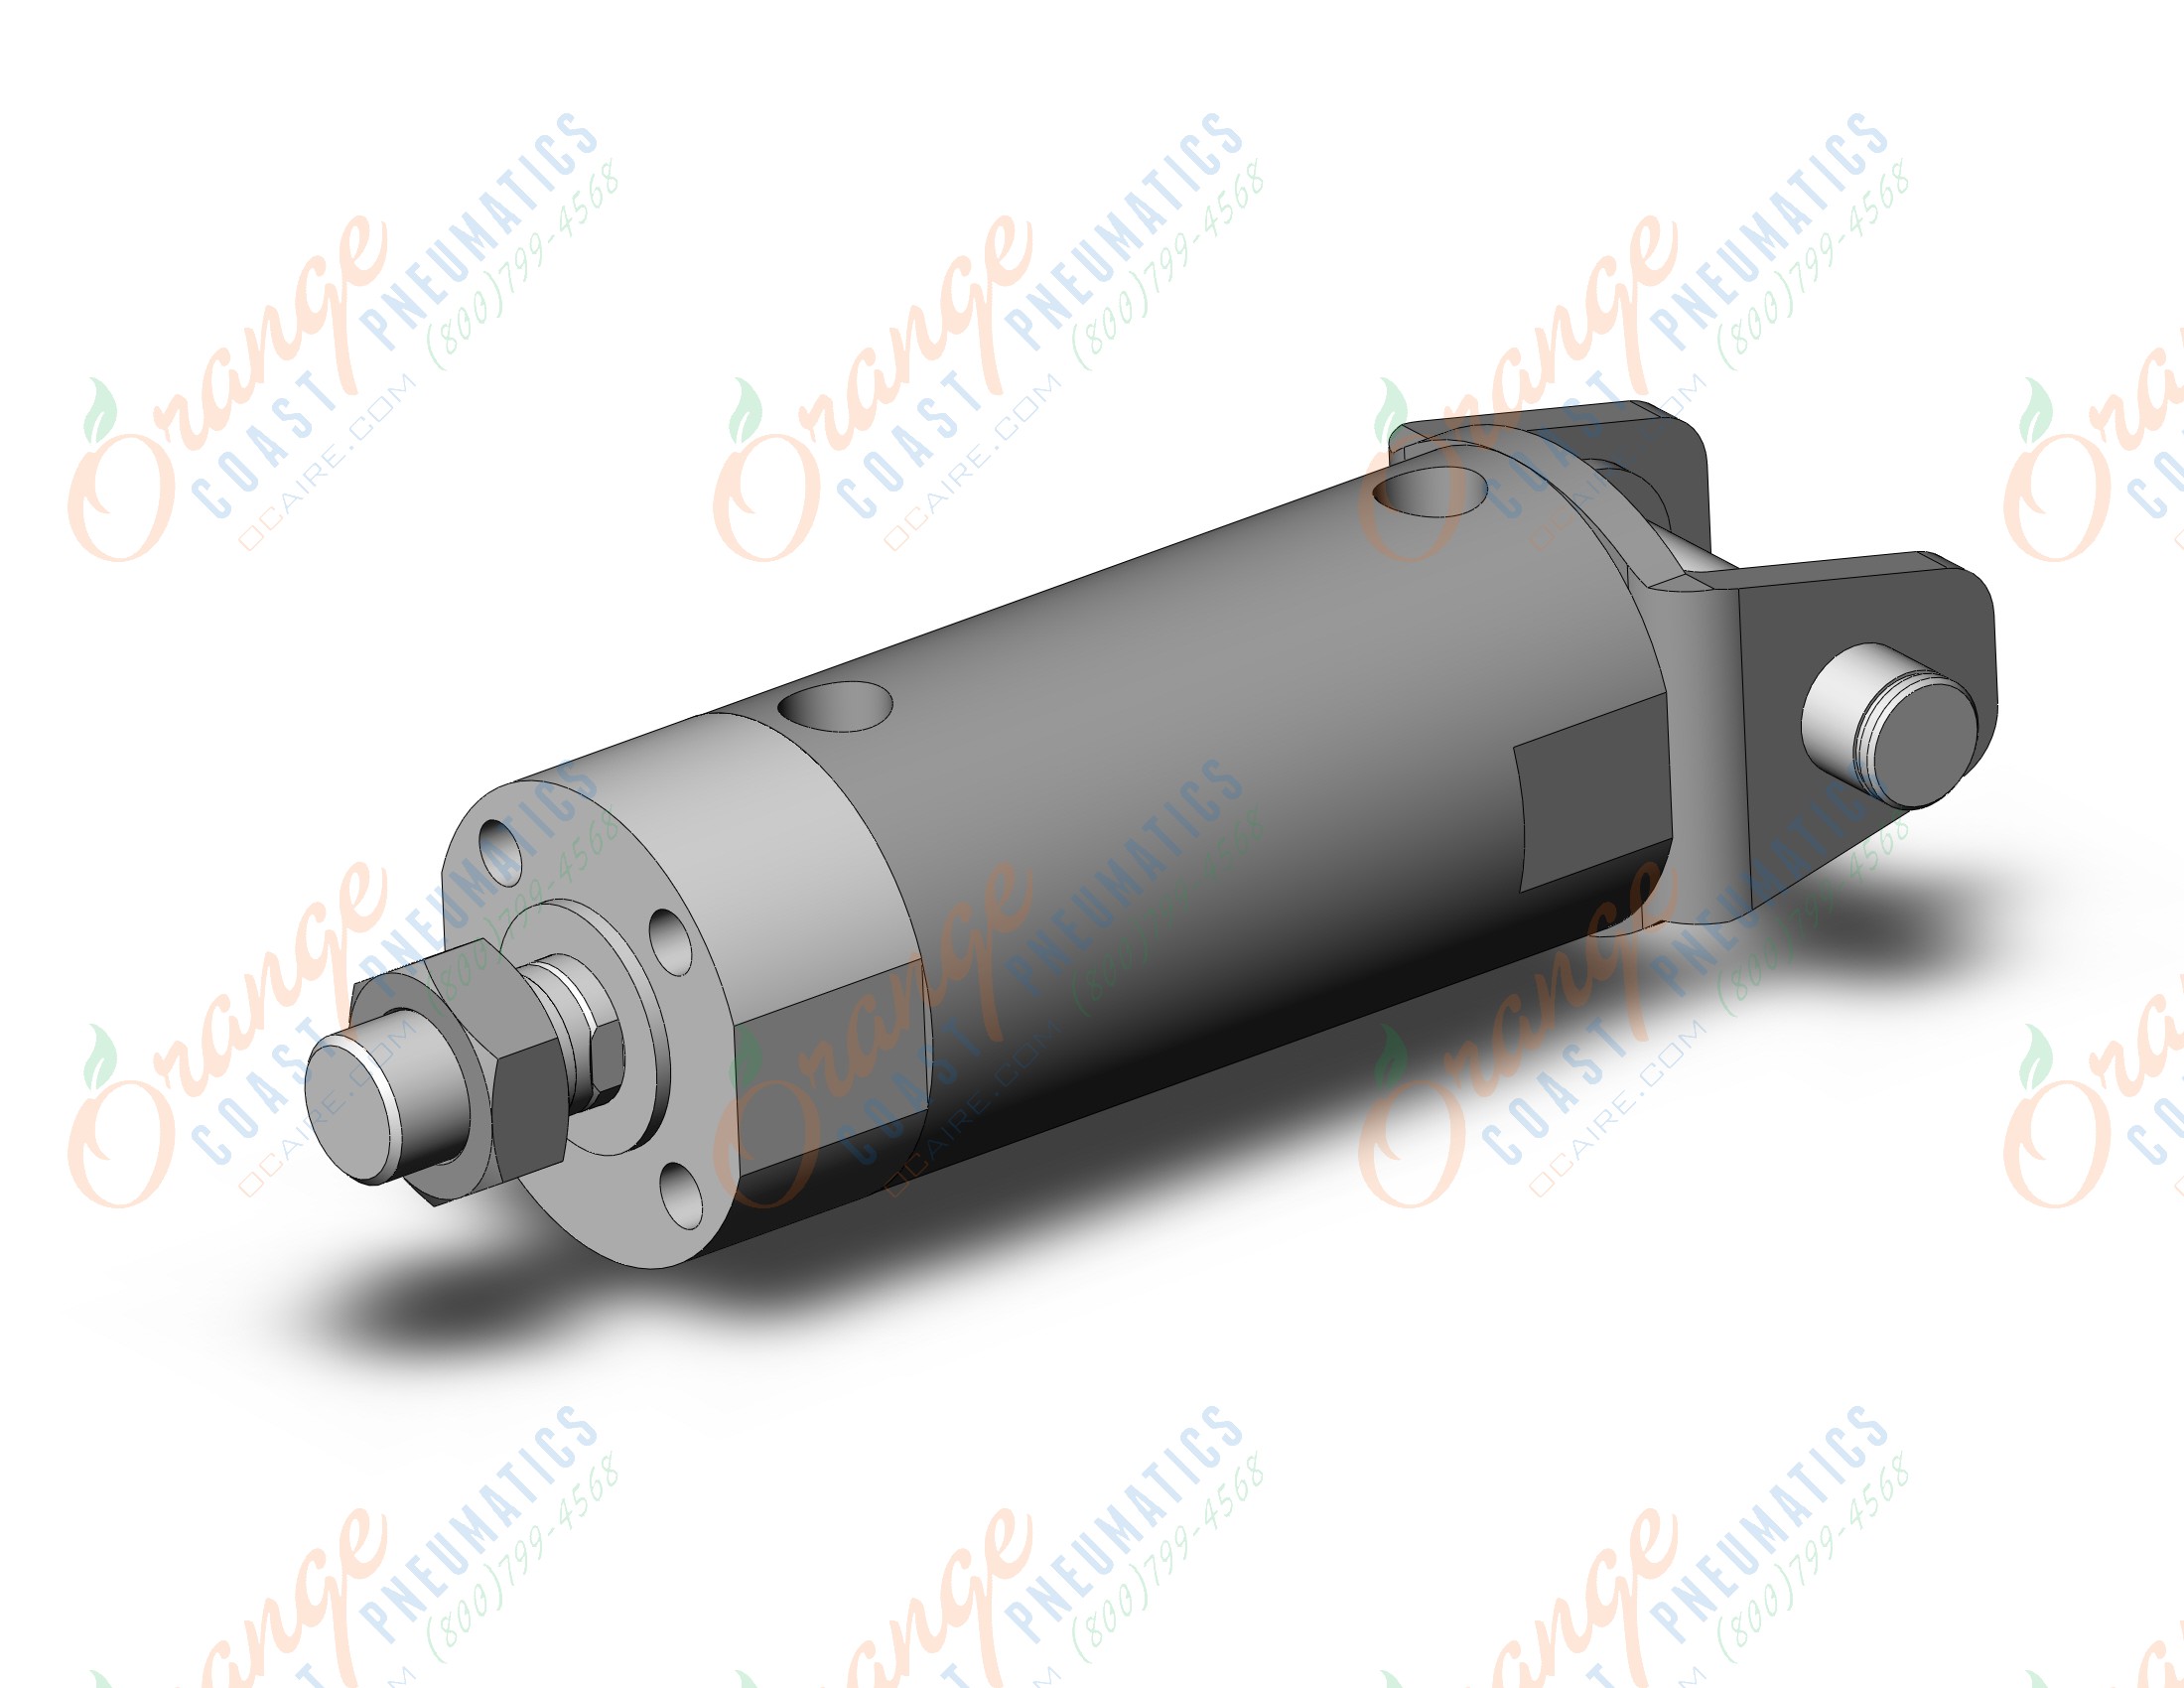 SMC CG3DN50-50 cg3, air cylinder short type, ROUND BODY CYLINDER